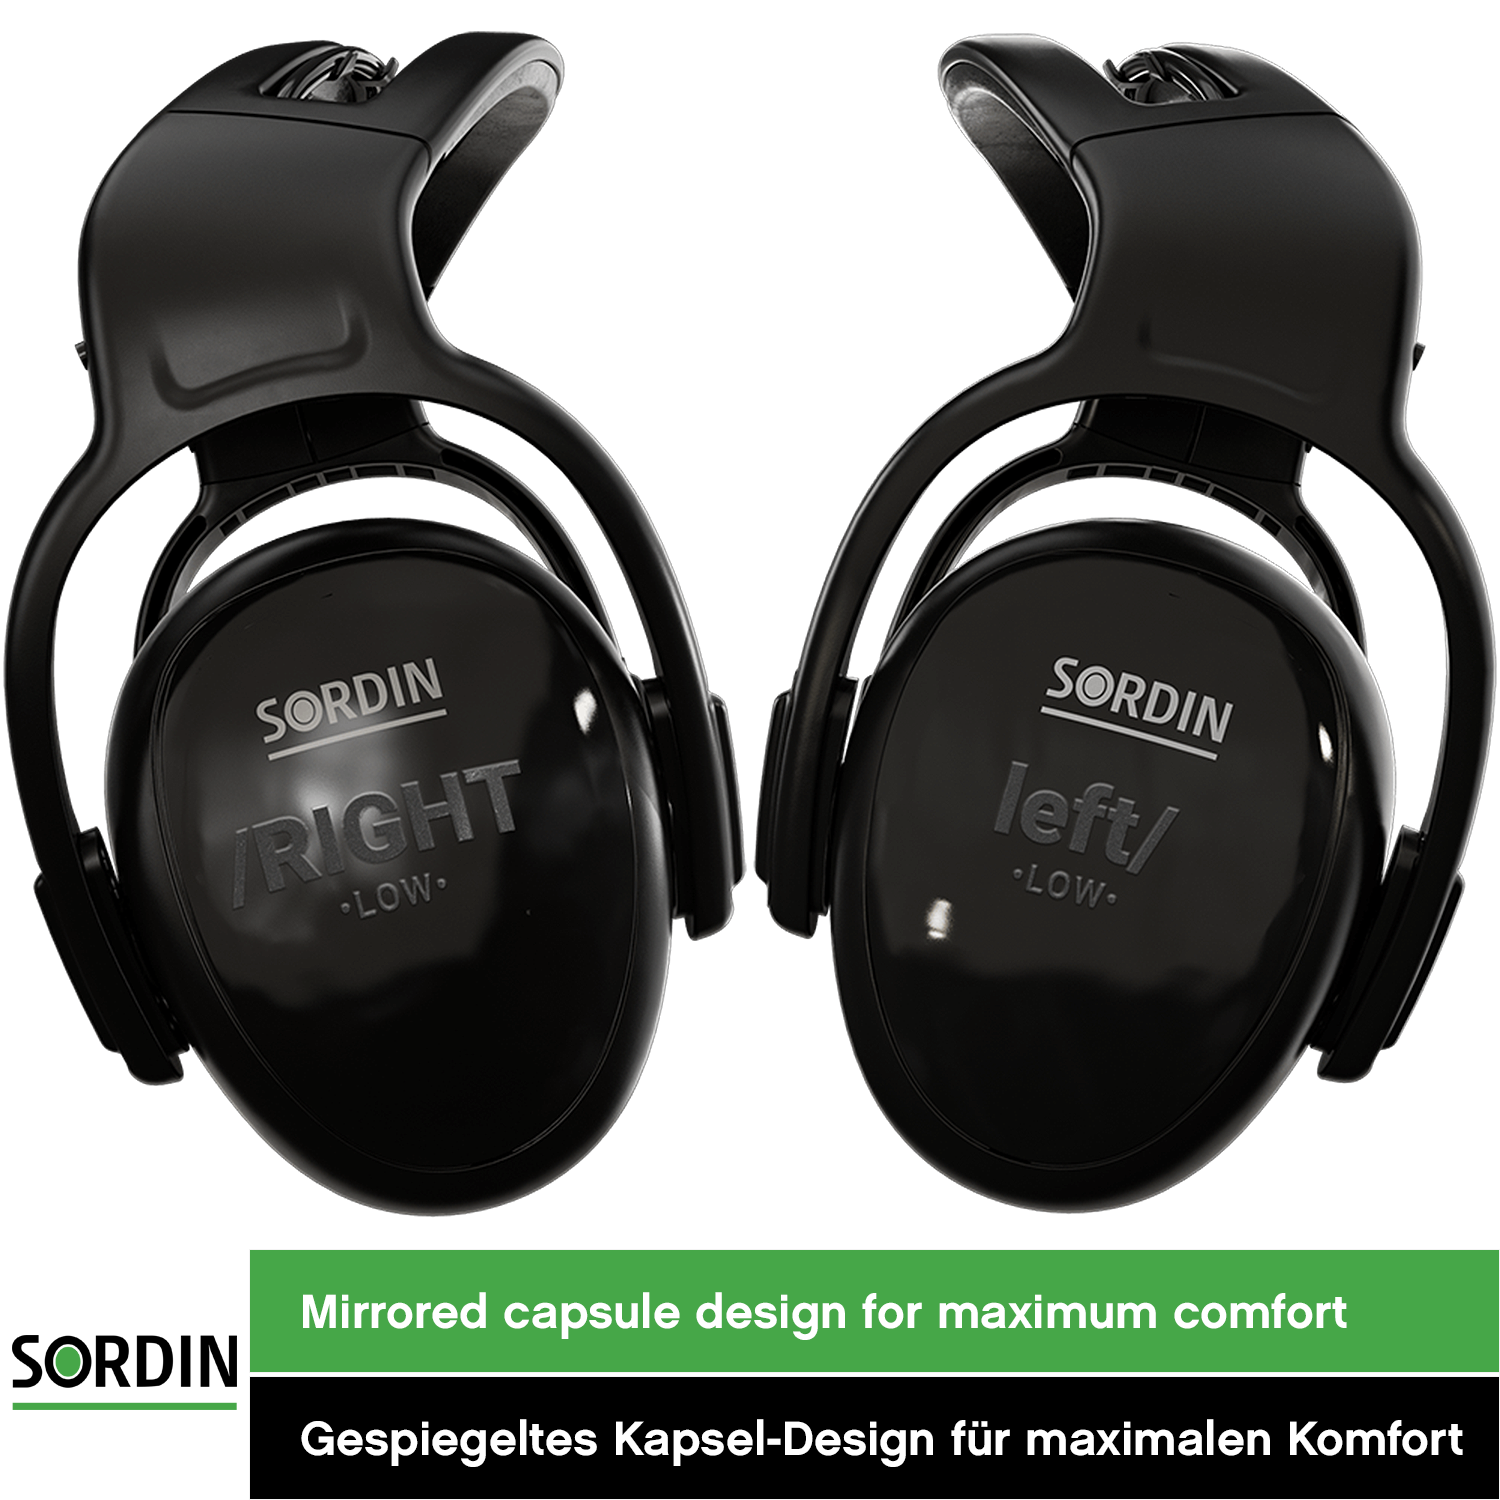 Sordin left/RIGHT low Kapsel-Gehörschutz - Ohrenschützer mit 24 dB SNR - passiver Gehörschützer für die Arbeit